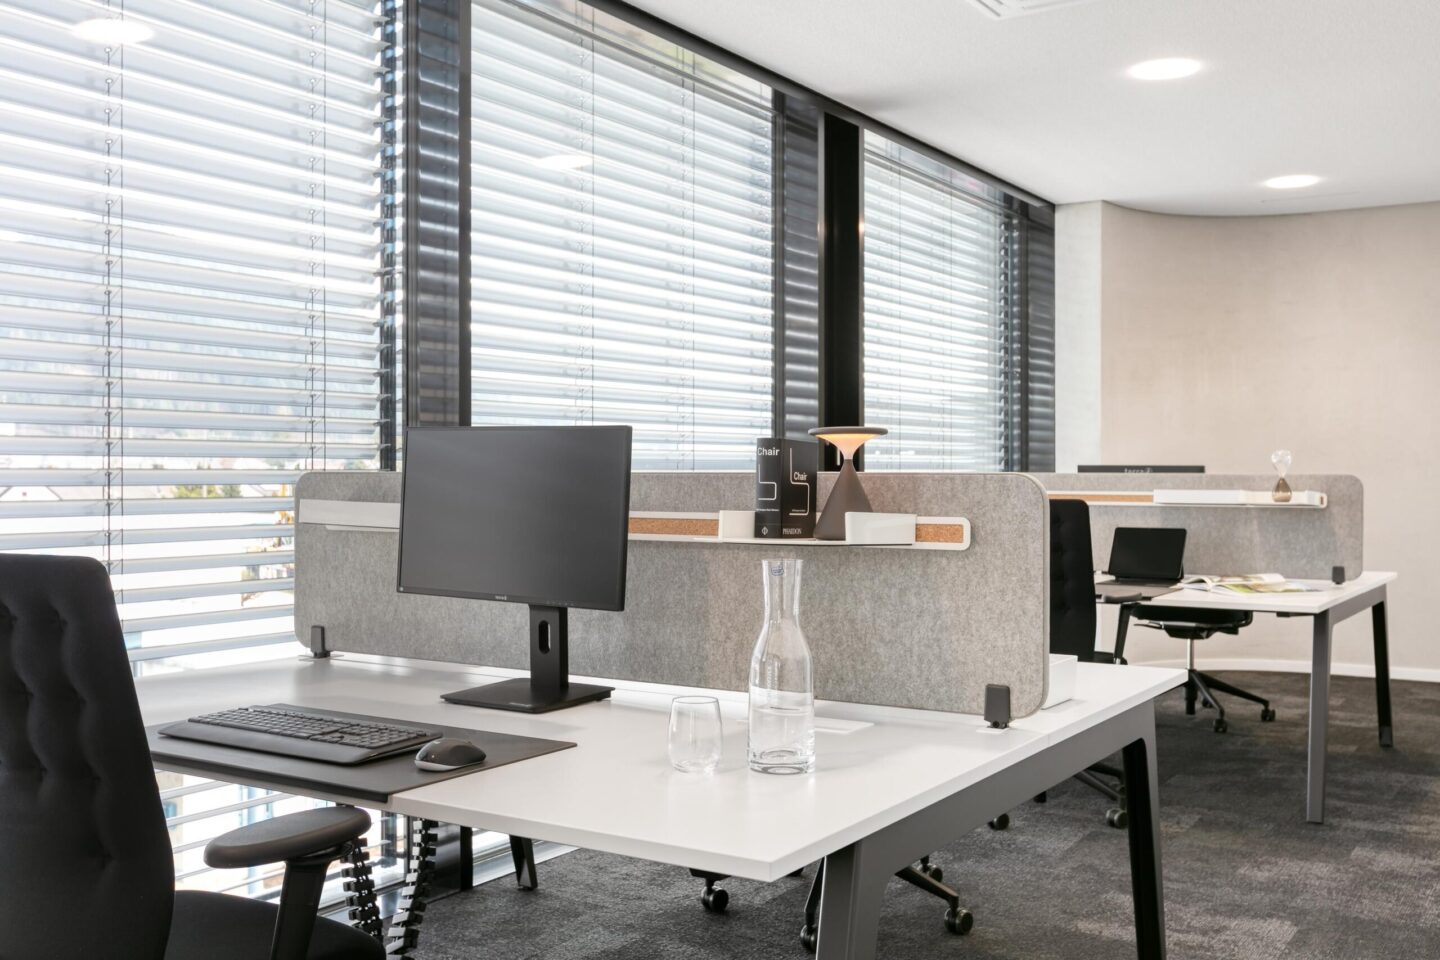 Hoch Baumaschinen │ exclusive office furniture │ electrically adjustable desks